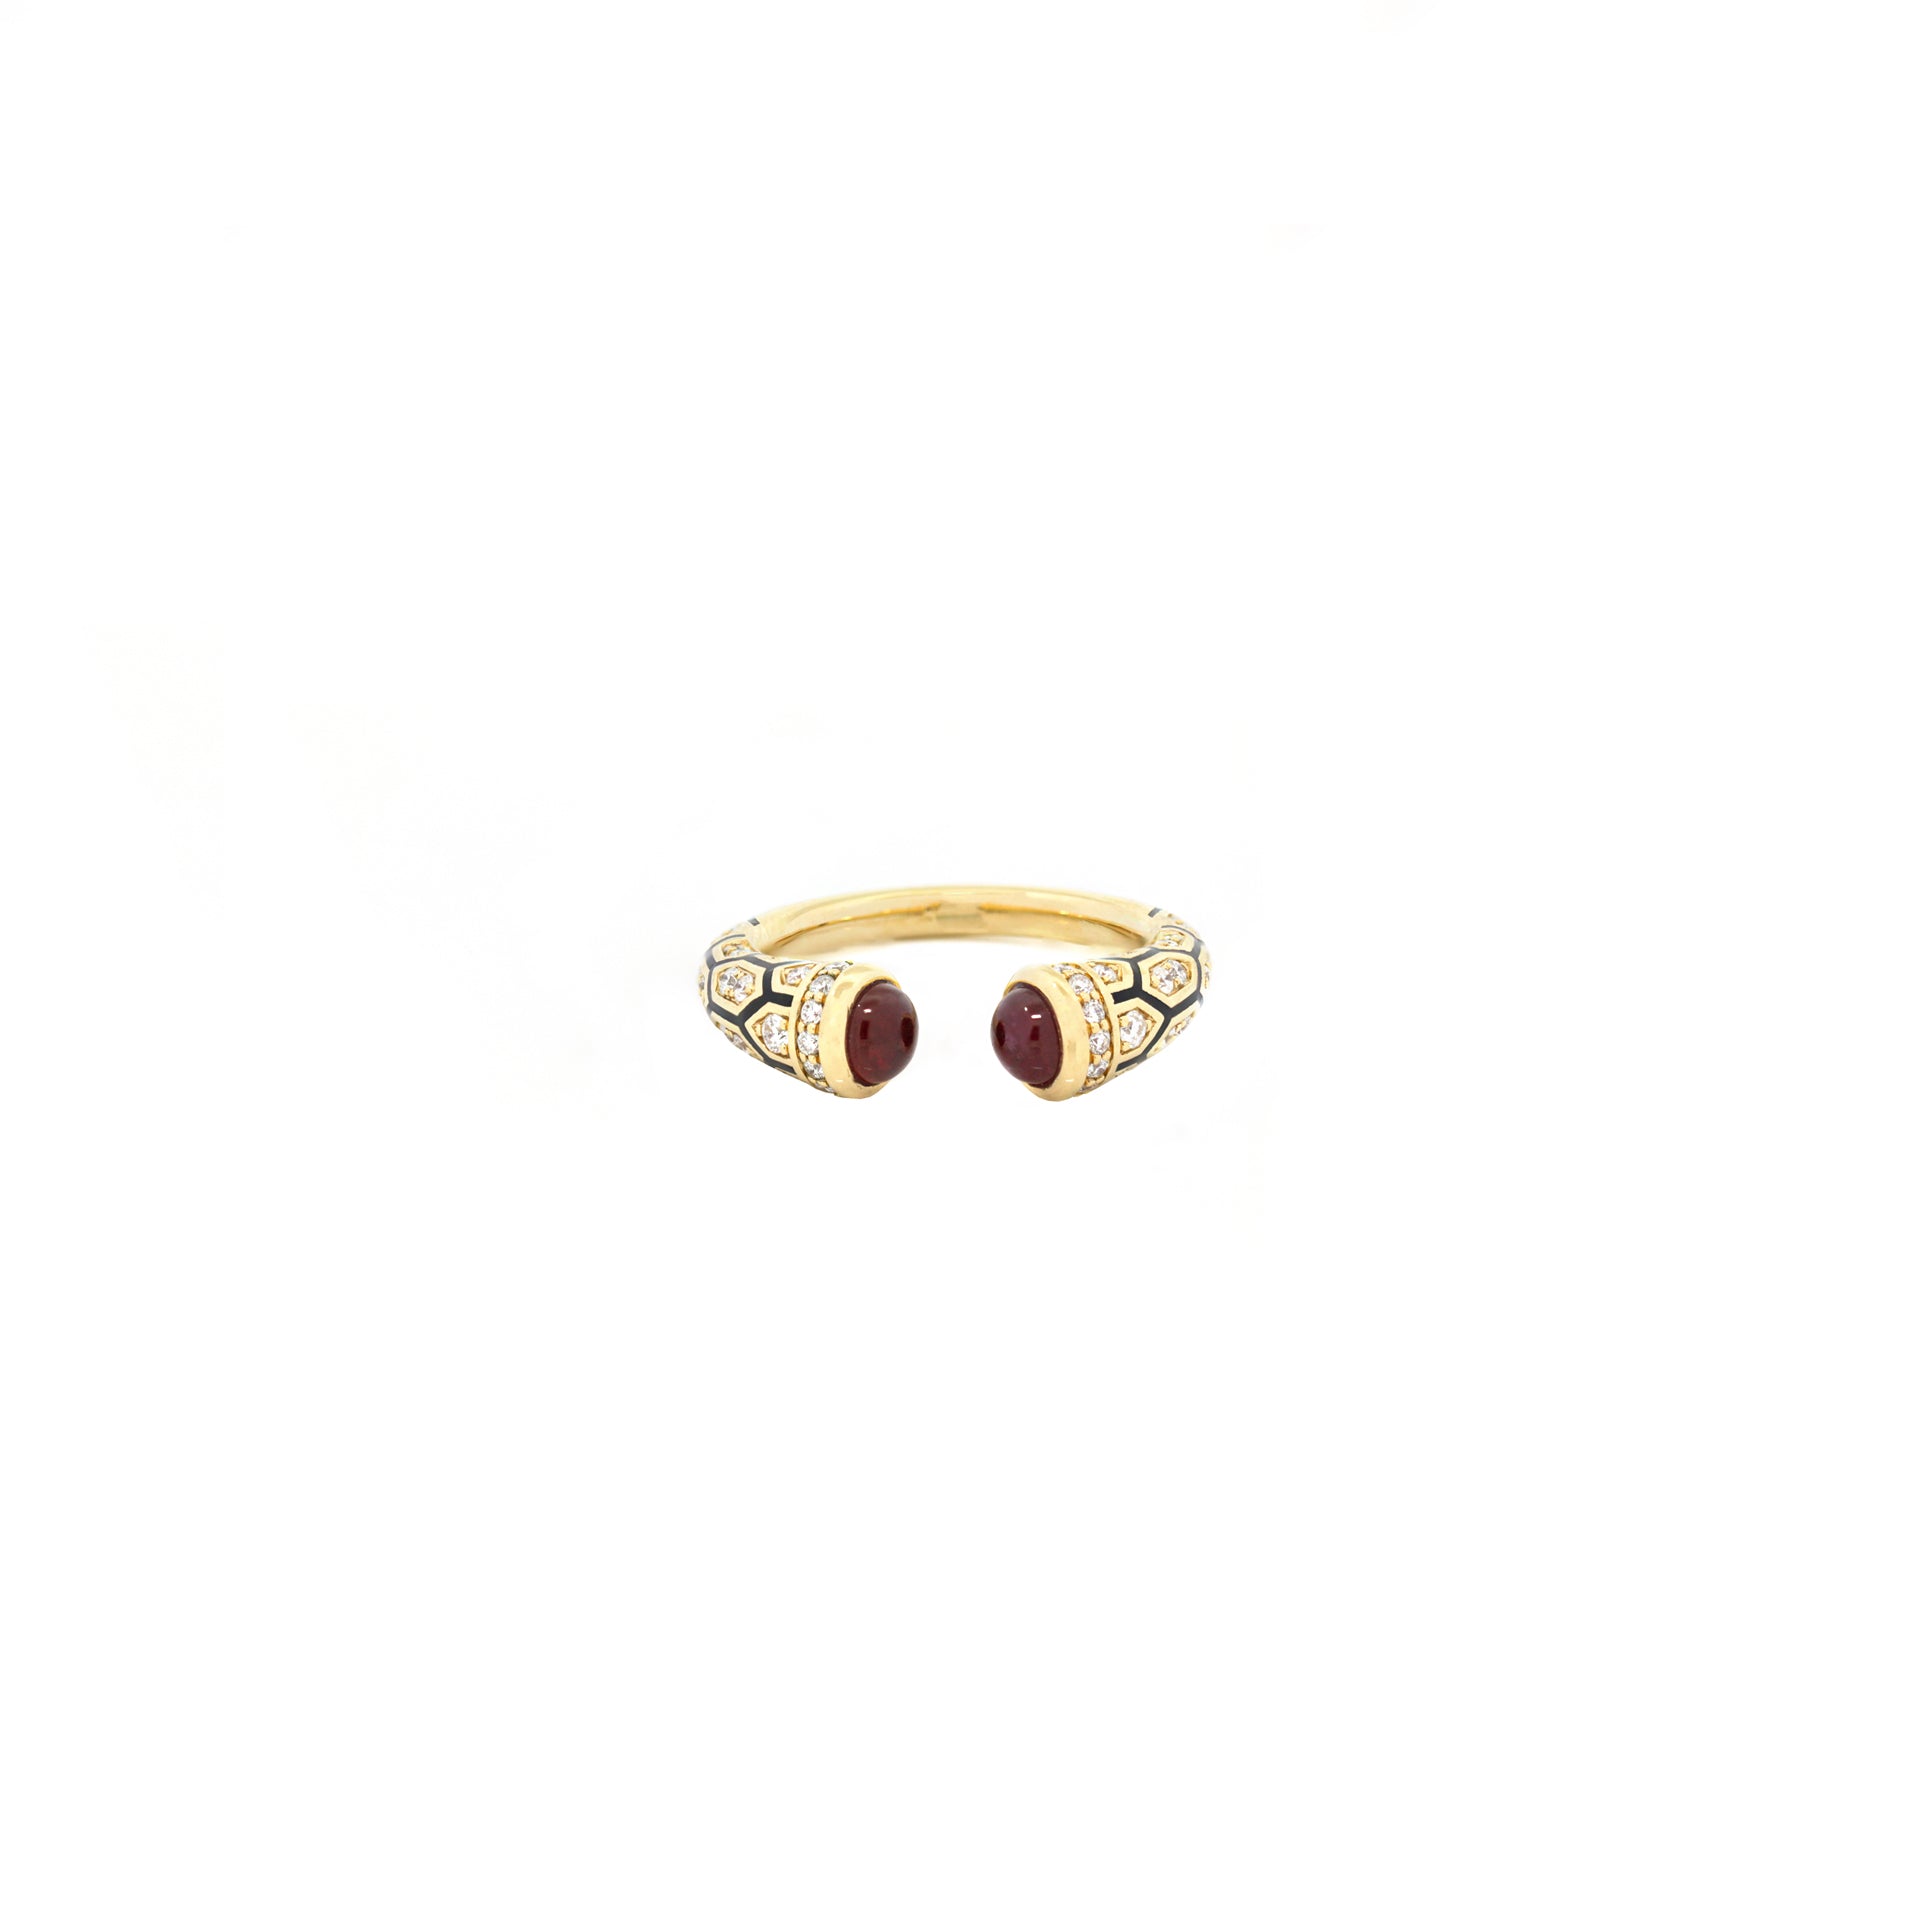 18k Mushabbak ring in yellow gold with diamonds and rubies